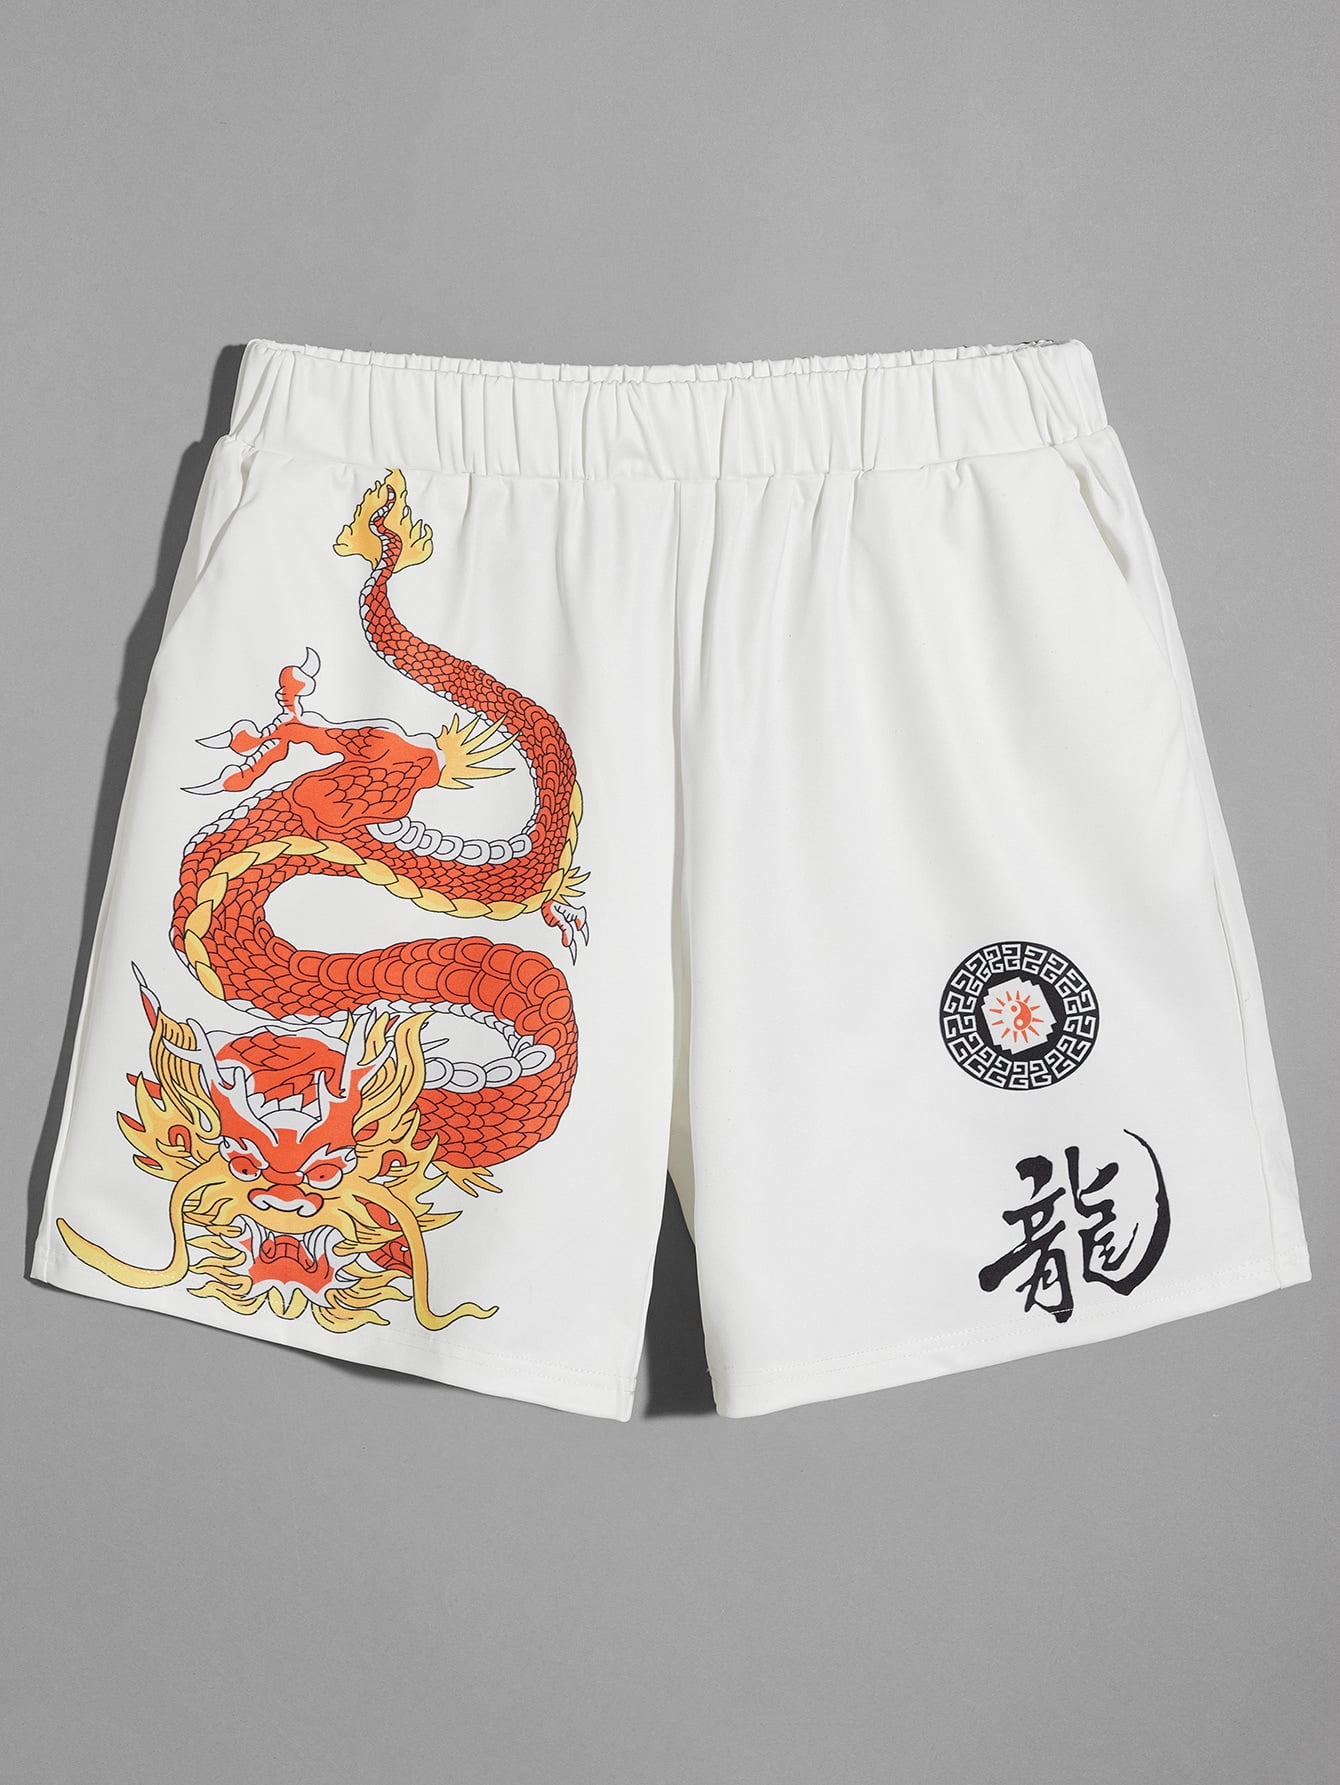 Yin Yang Dragons Mens Fashion Board/Beach Shorts Quick Dry Swimming Shorts with Pockets